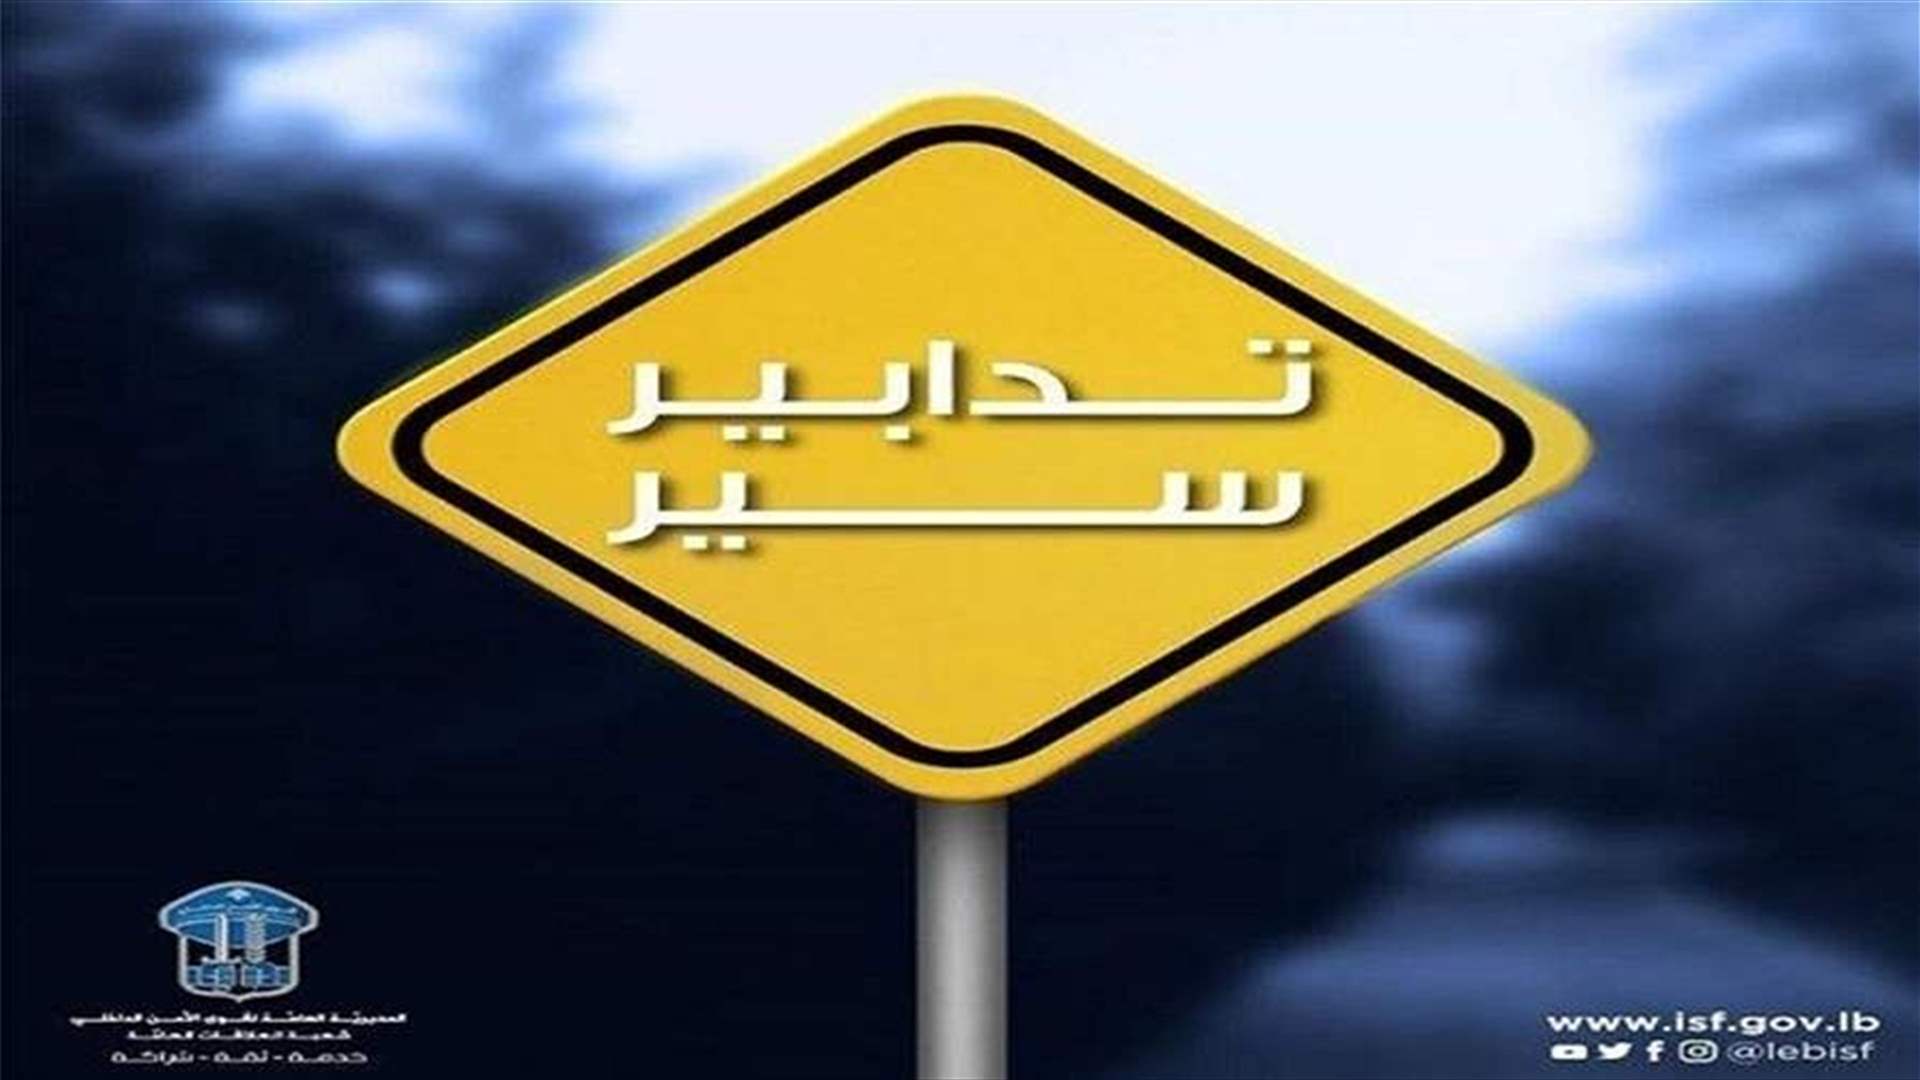 تدابير سير ومنع مرور في عدد من شوارع بيروت يوم غد الأحد